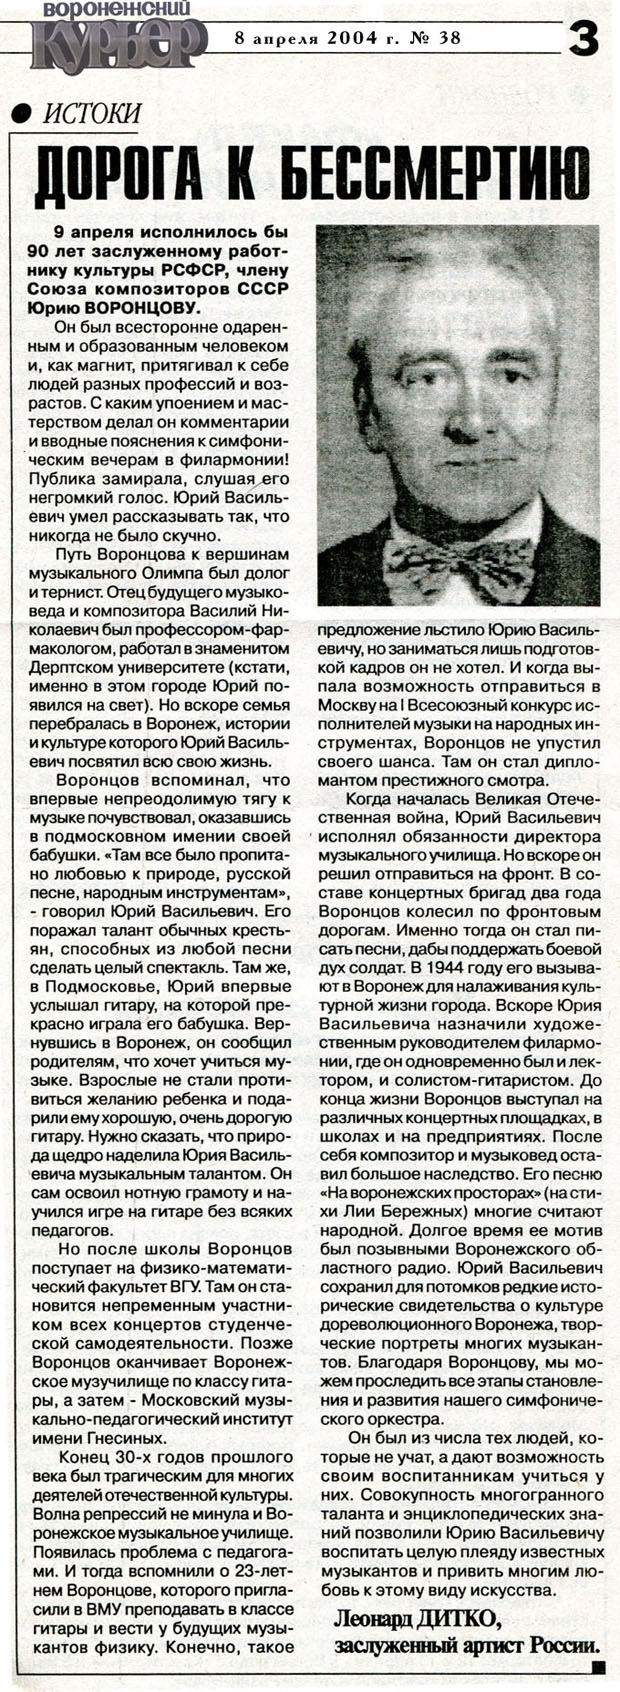 Статья к 90-летию со дня рождения Ю. В. Воронцова (2004)